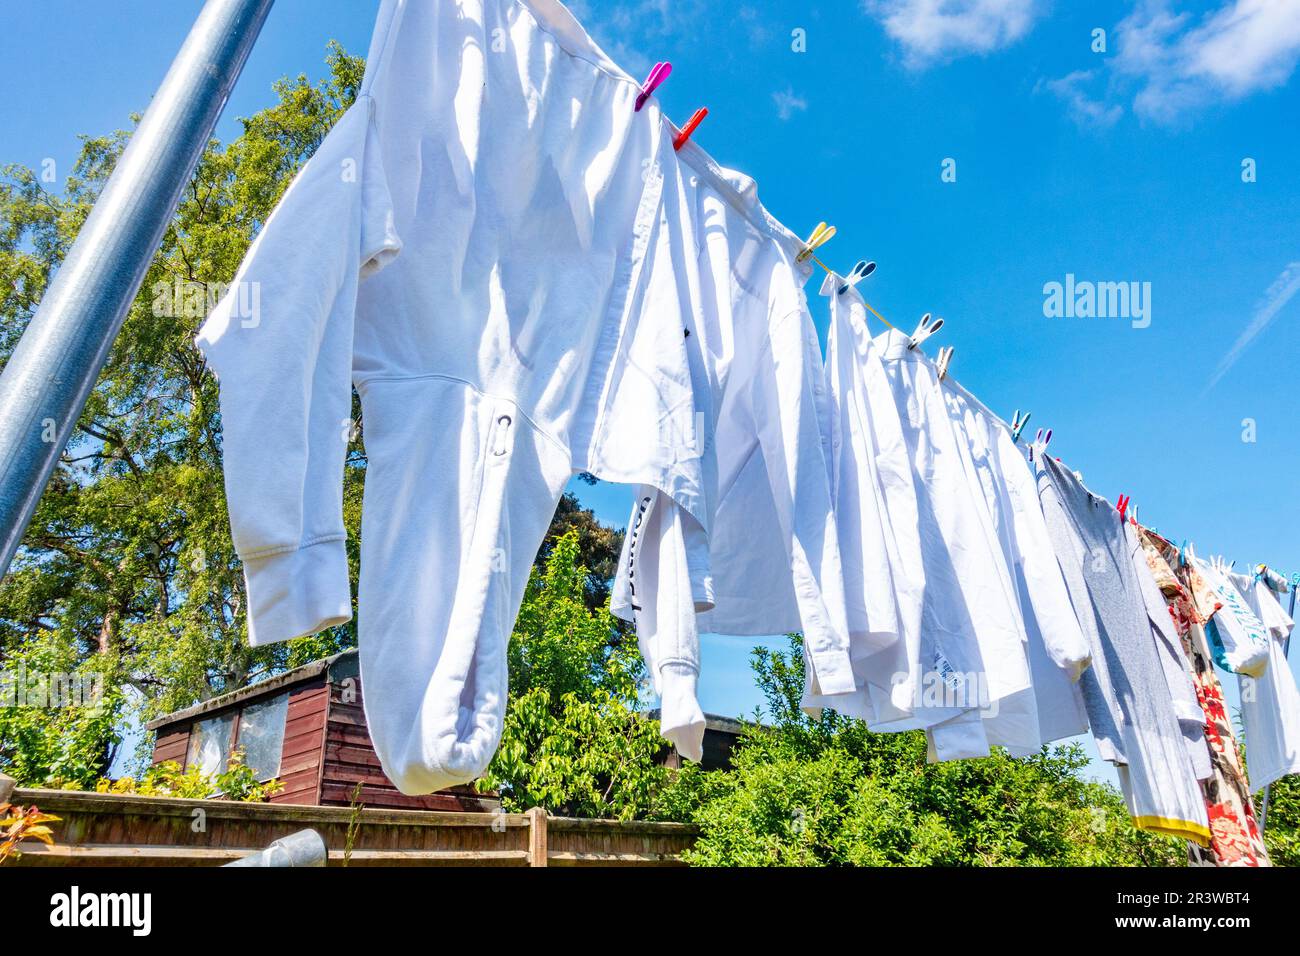 Kleidung, hauptsächlich weiße Hemden, hängt an einer Wäscheleine in einem Wohngarten, um an einem hellen, sonnigen Tag mit blauem Himmel zu trocknen Stockfoto